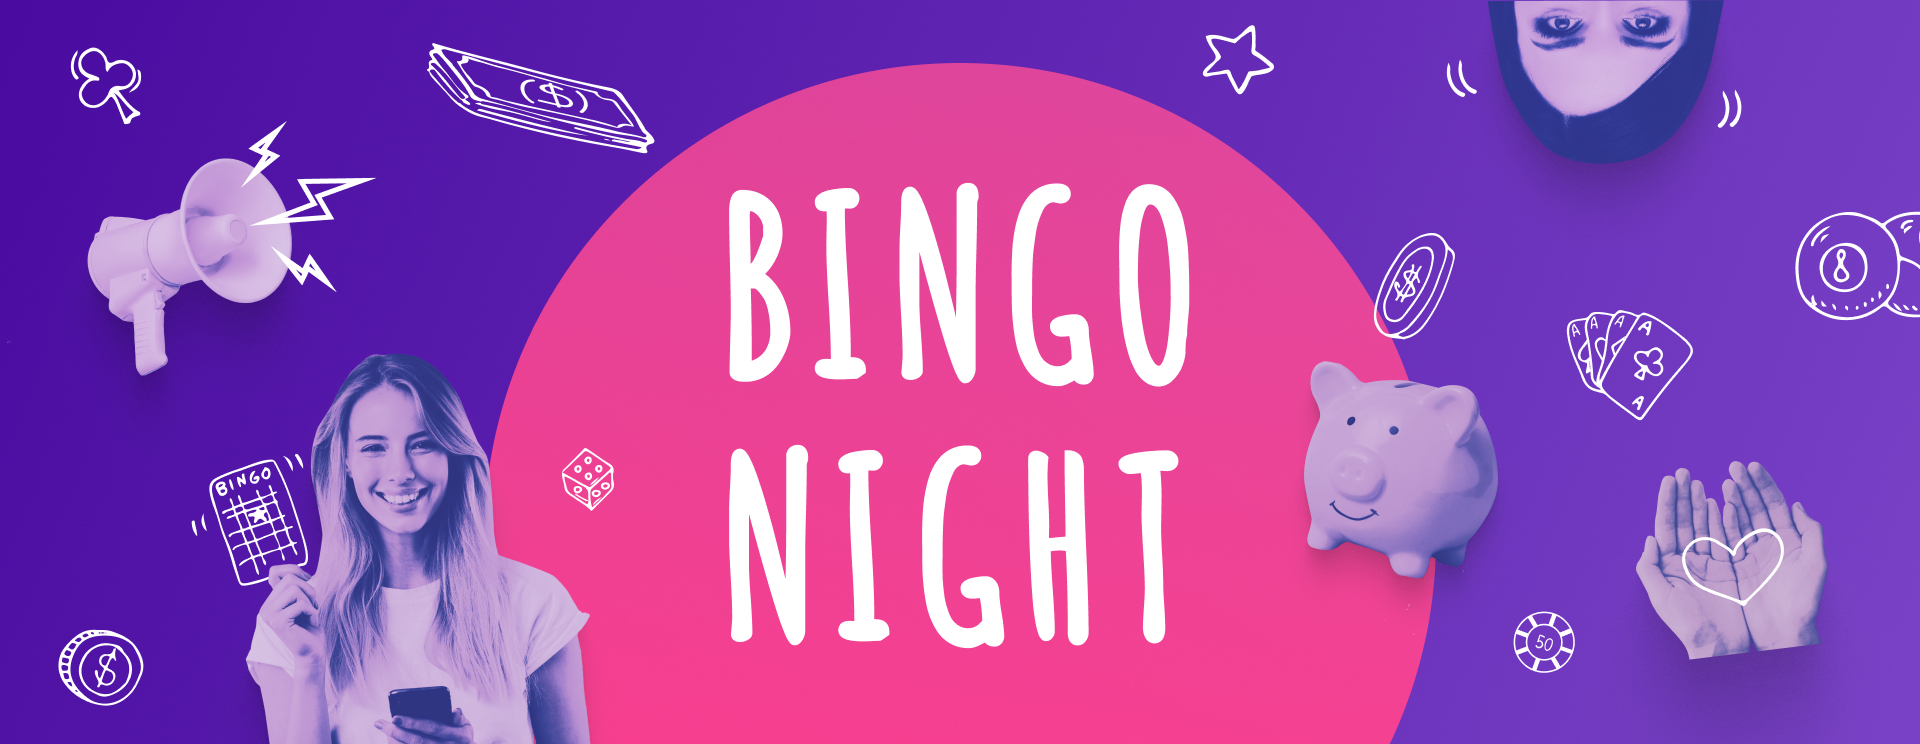 bingo night banner